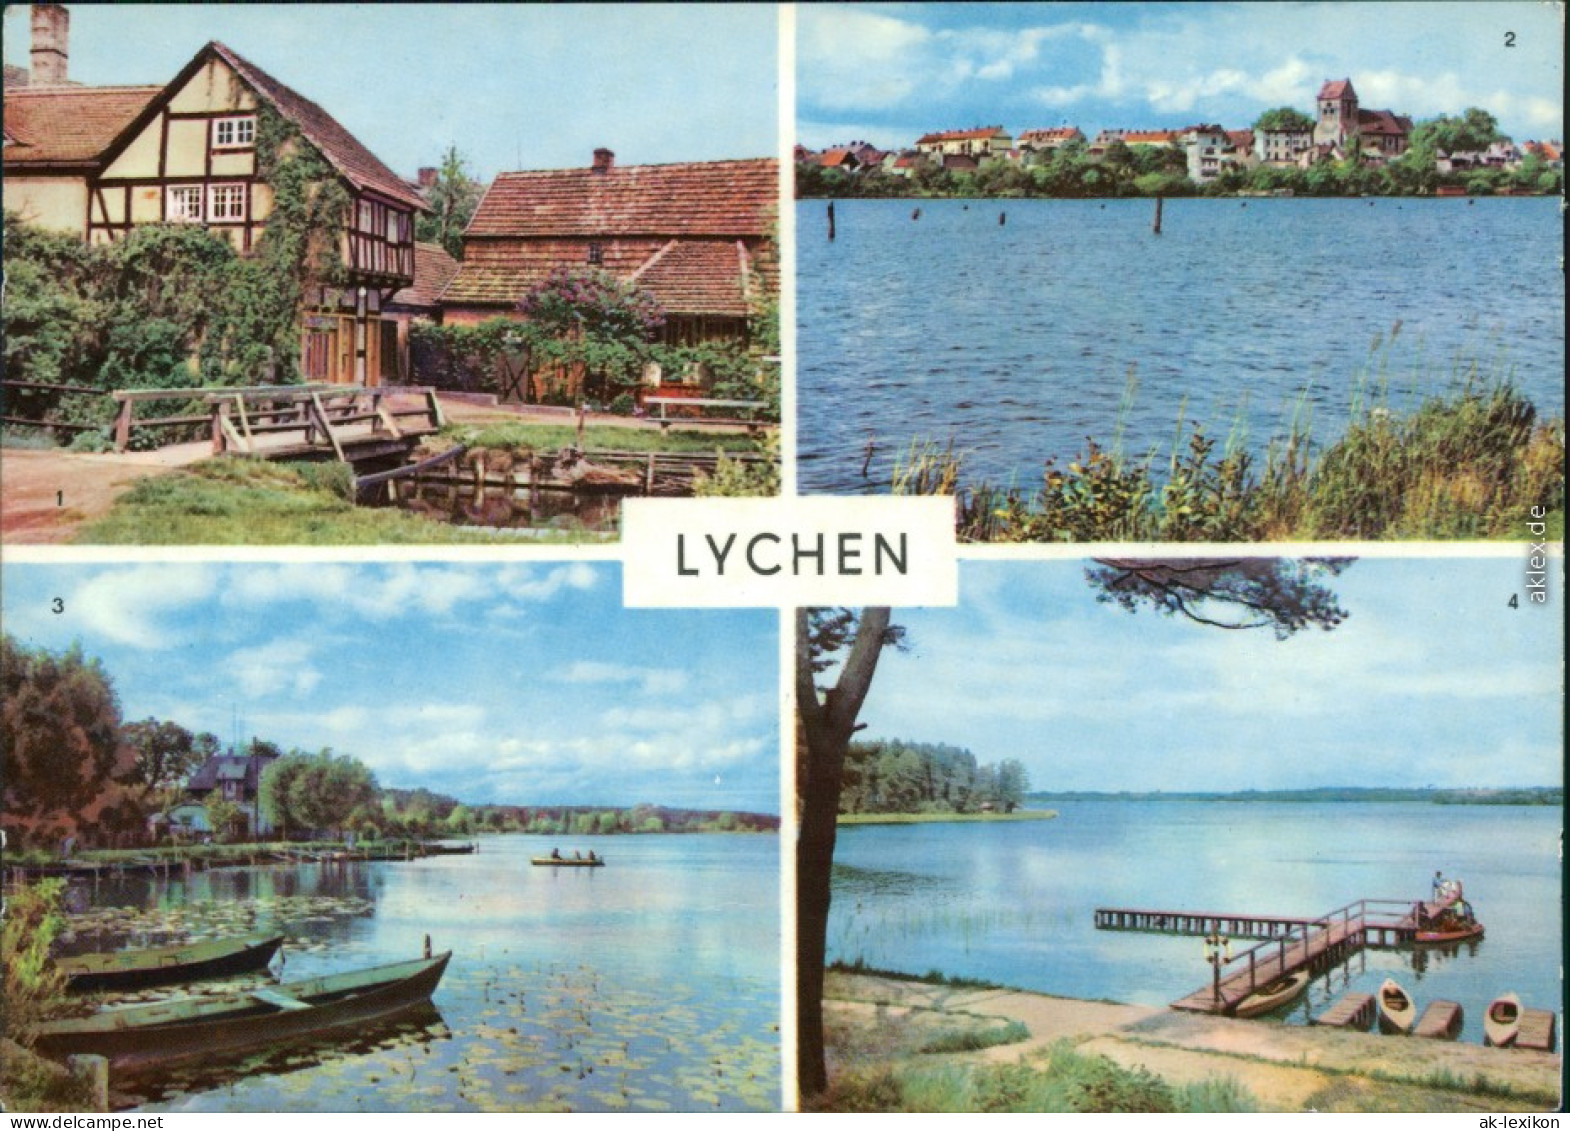 Lychen 1. Malerwinkel, 2. Stadtsee, 3. Malerwinkel, 4. Am Großen Lychensee 1970 - Lychen